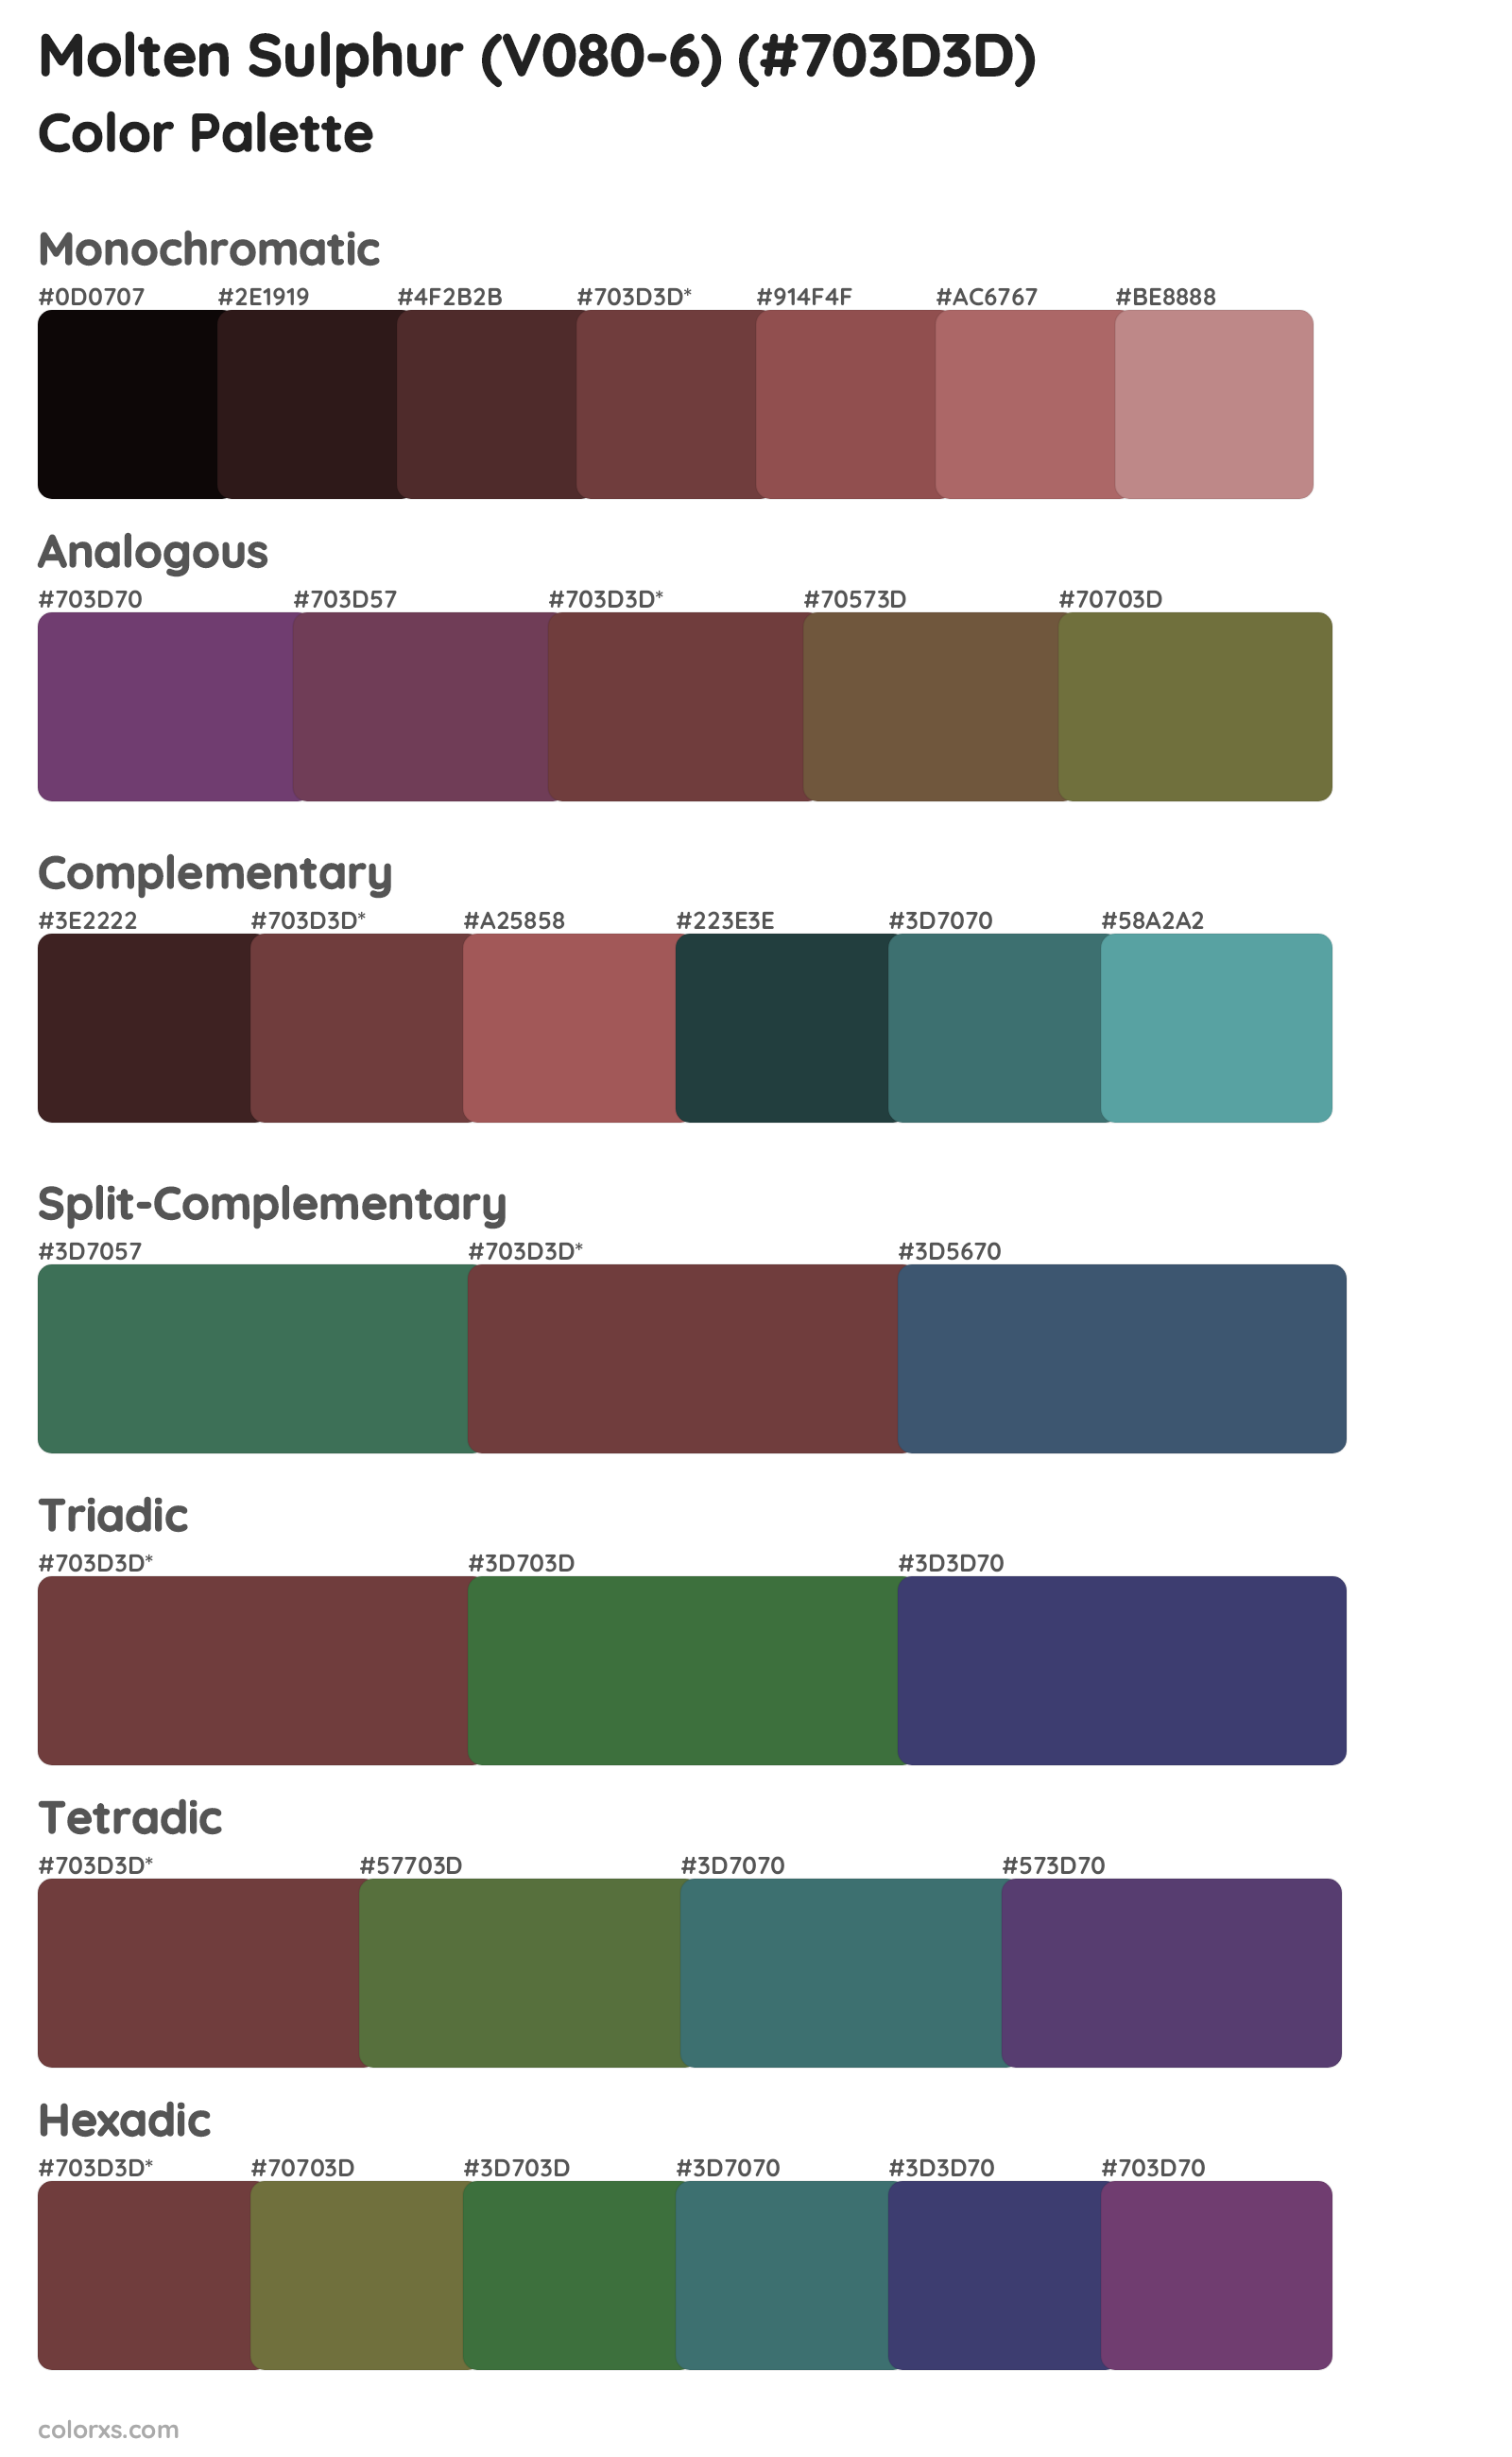 Molten Sulphur (V080-6) Color Scheme Palettes